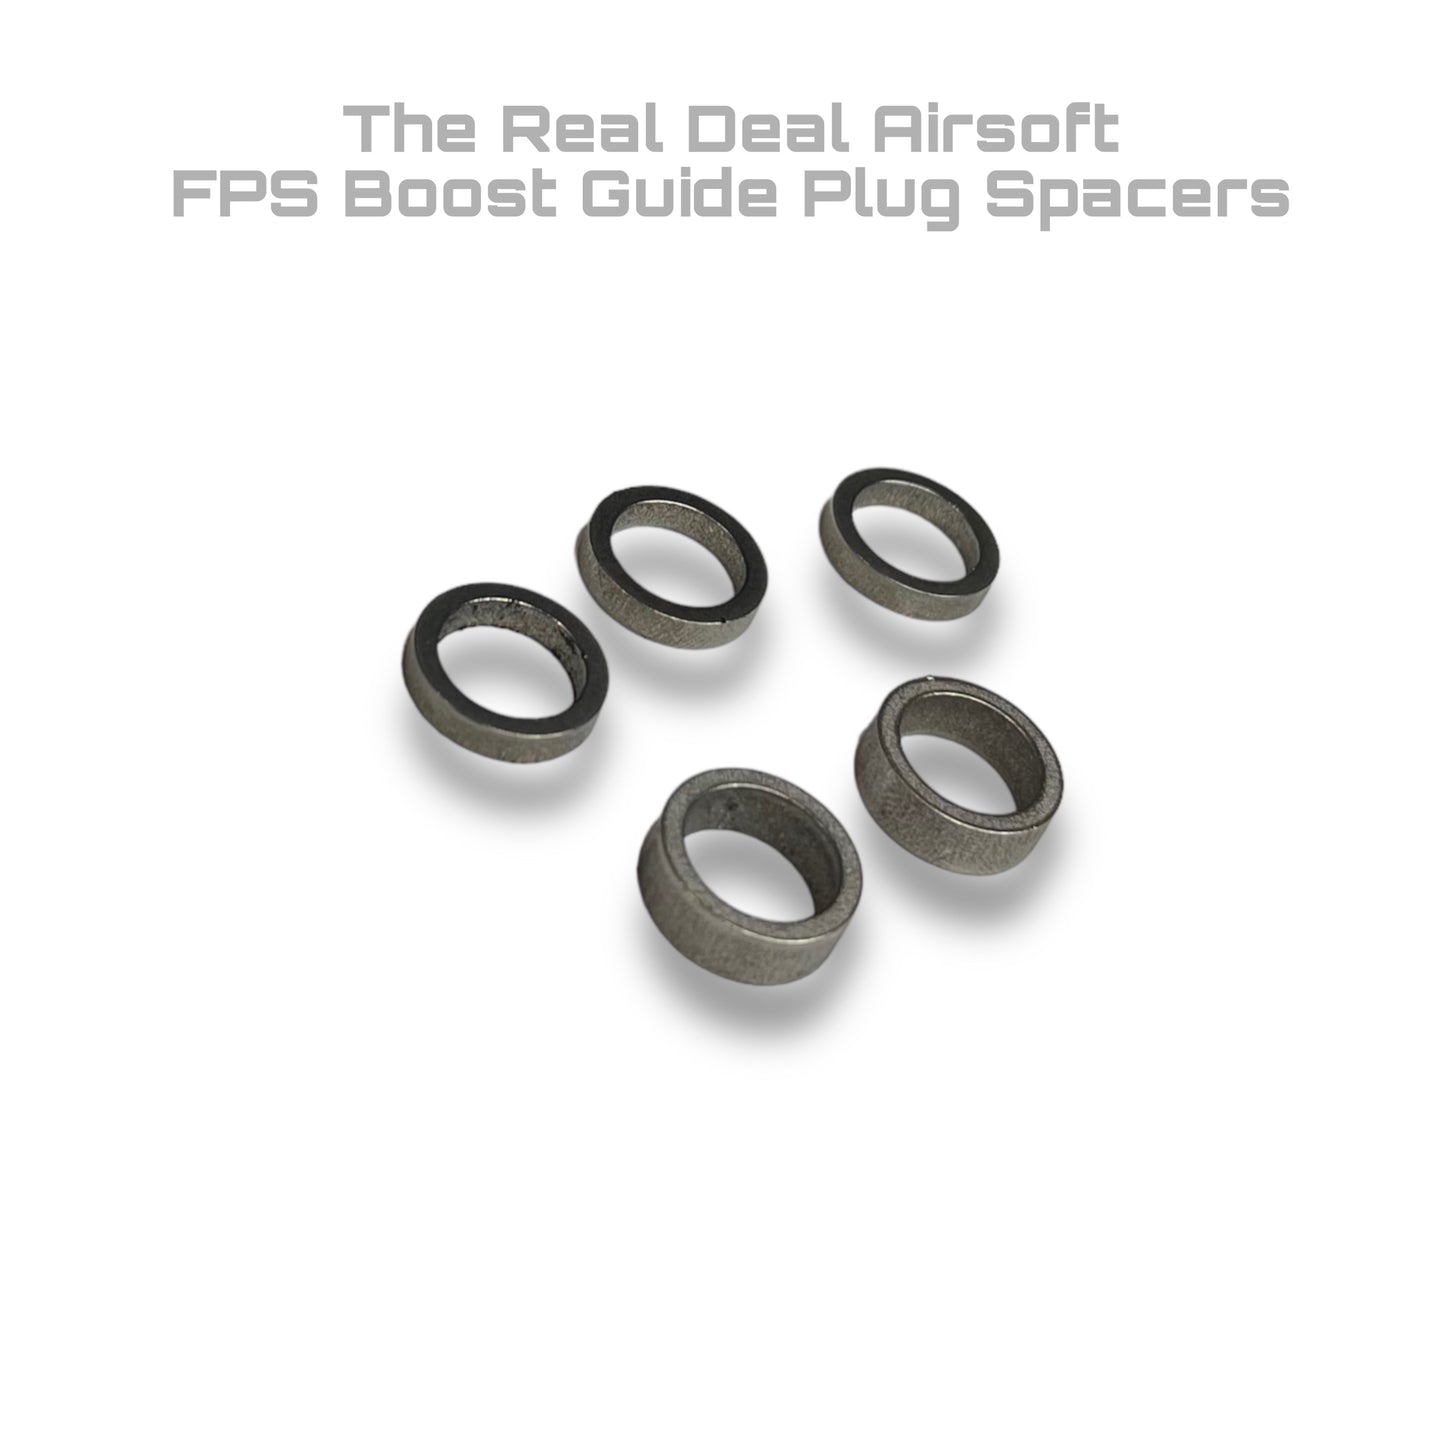 FPS Boost Guide Plug Spacers